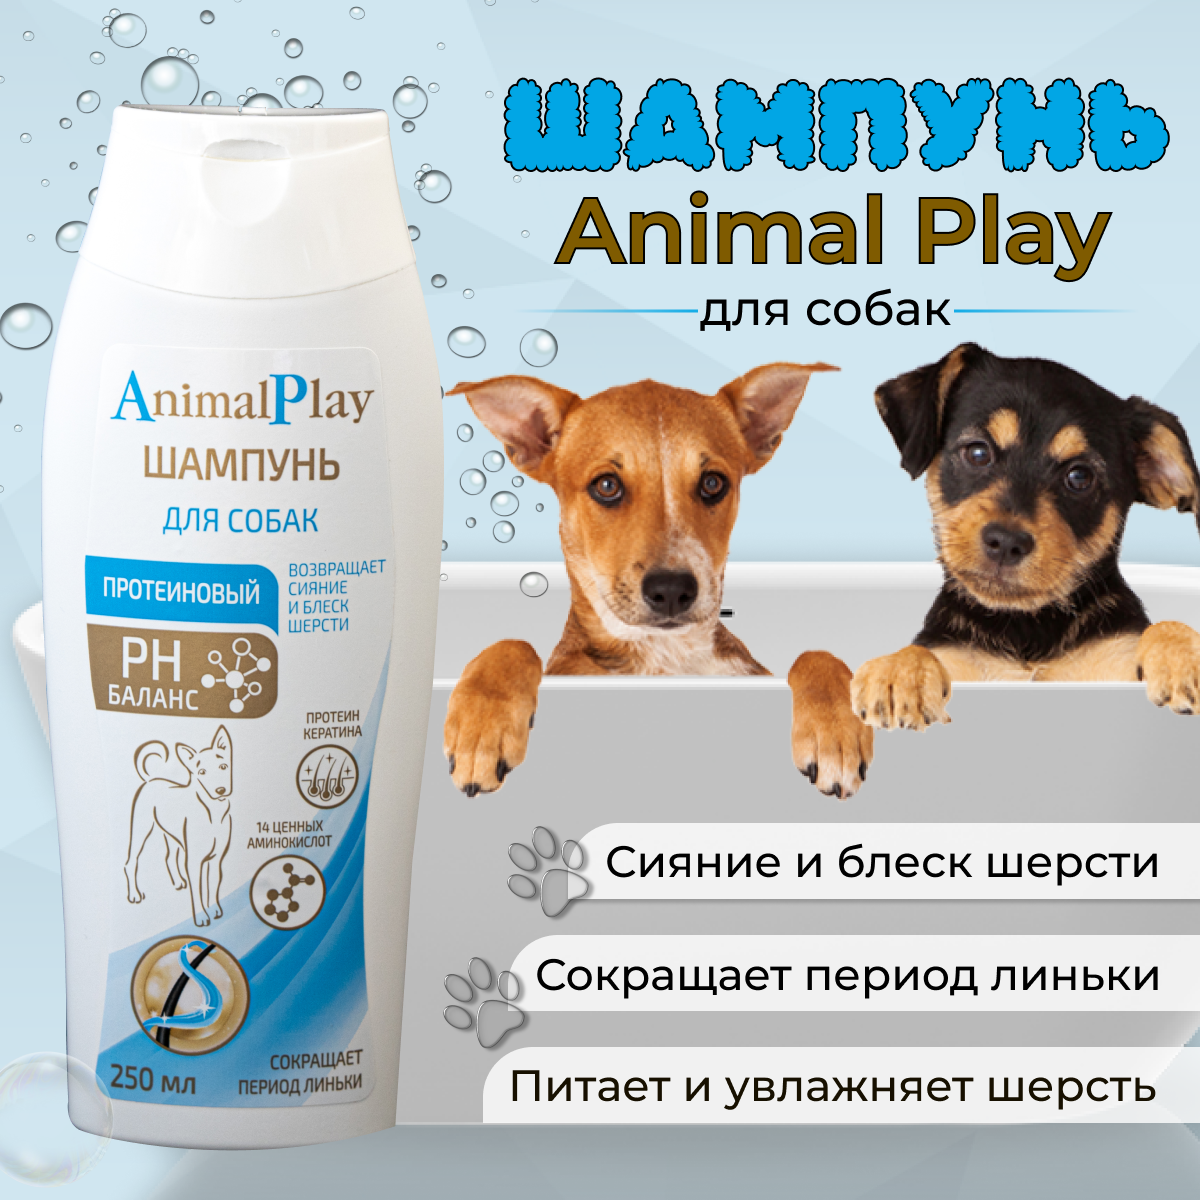 Шампунь Animal Play протеиновый для собак , 250 мл